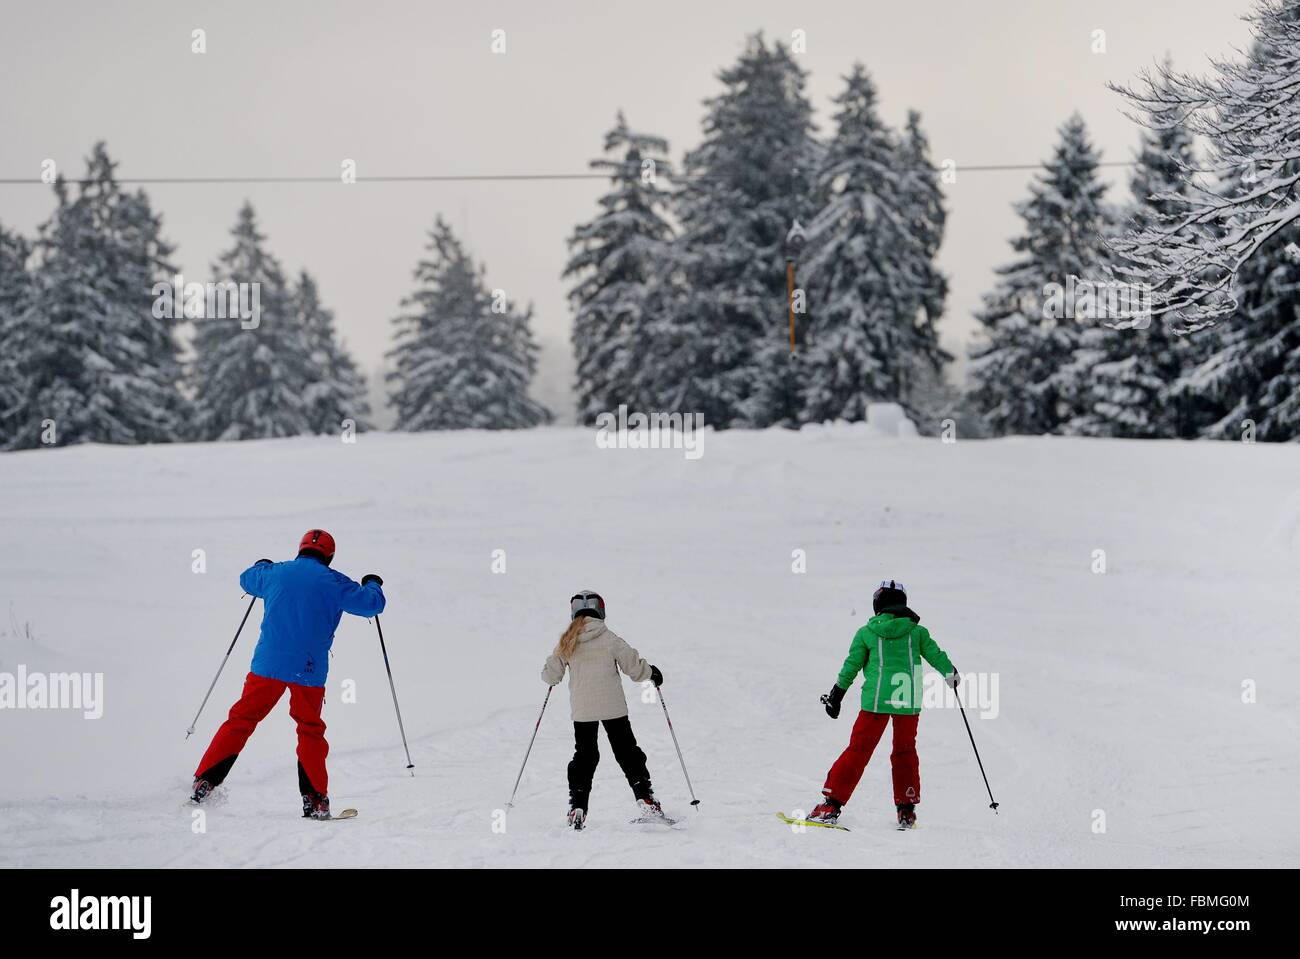 Le persone che praticano lo sport invernale, Germania, nella catena montuosa di Harz, 15. Gennaio 2016. Foto: Frank può Foto Stock